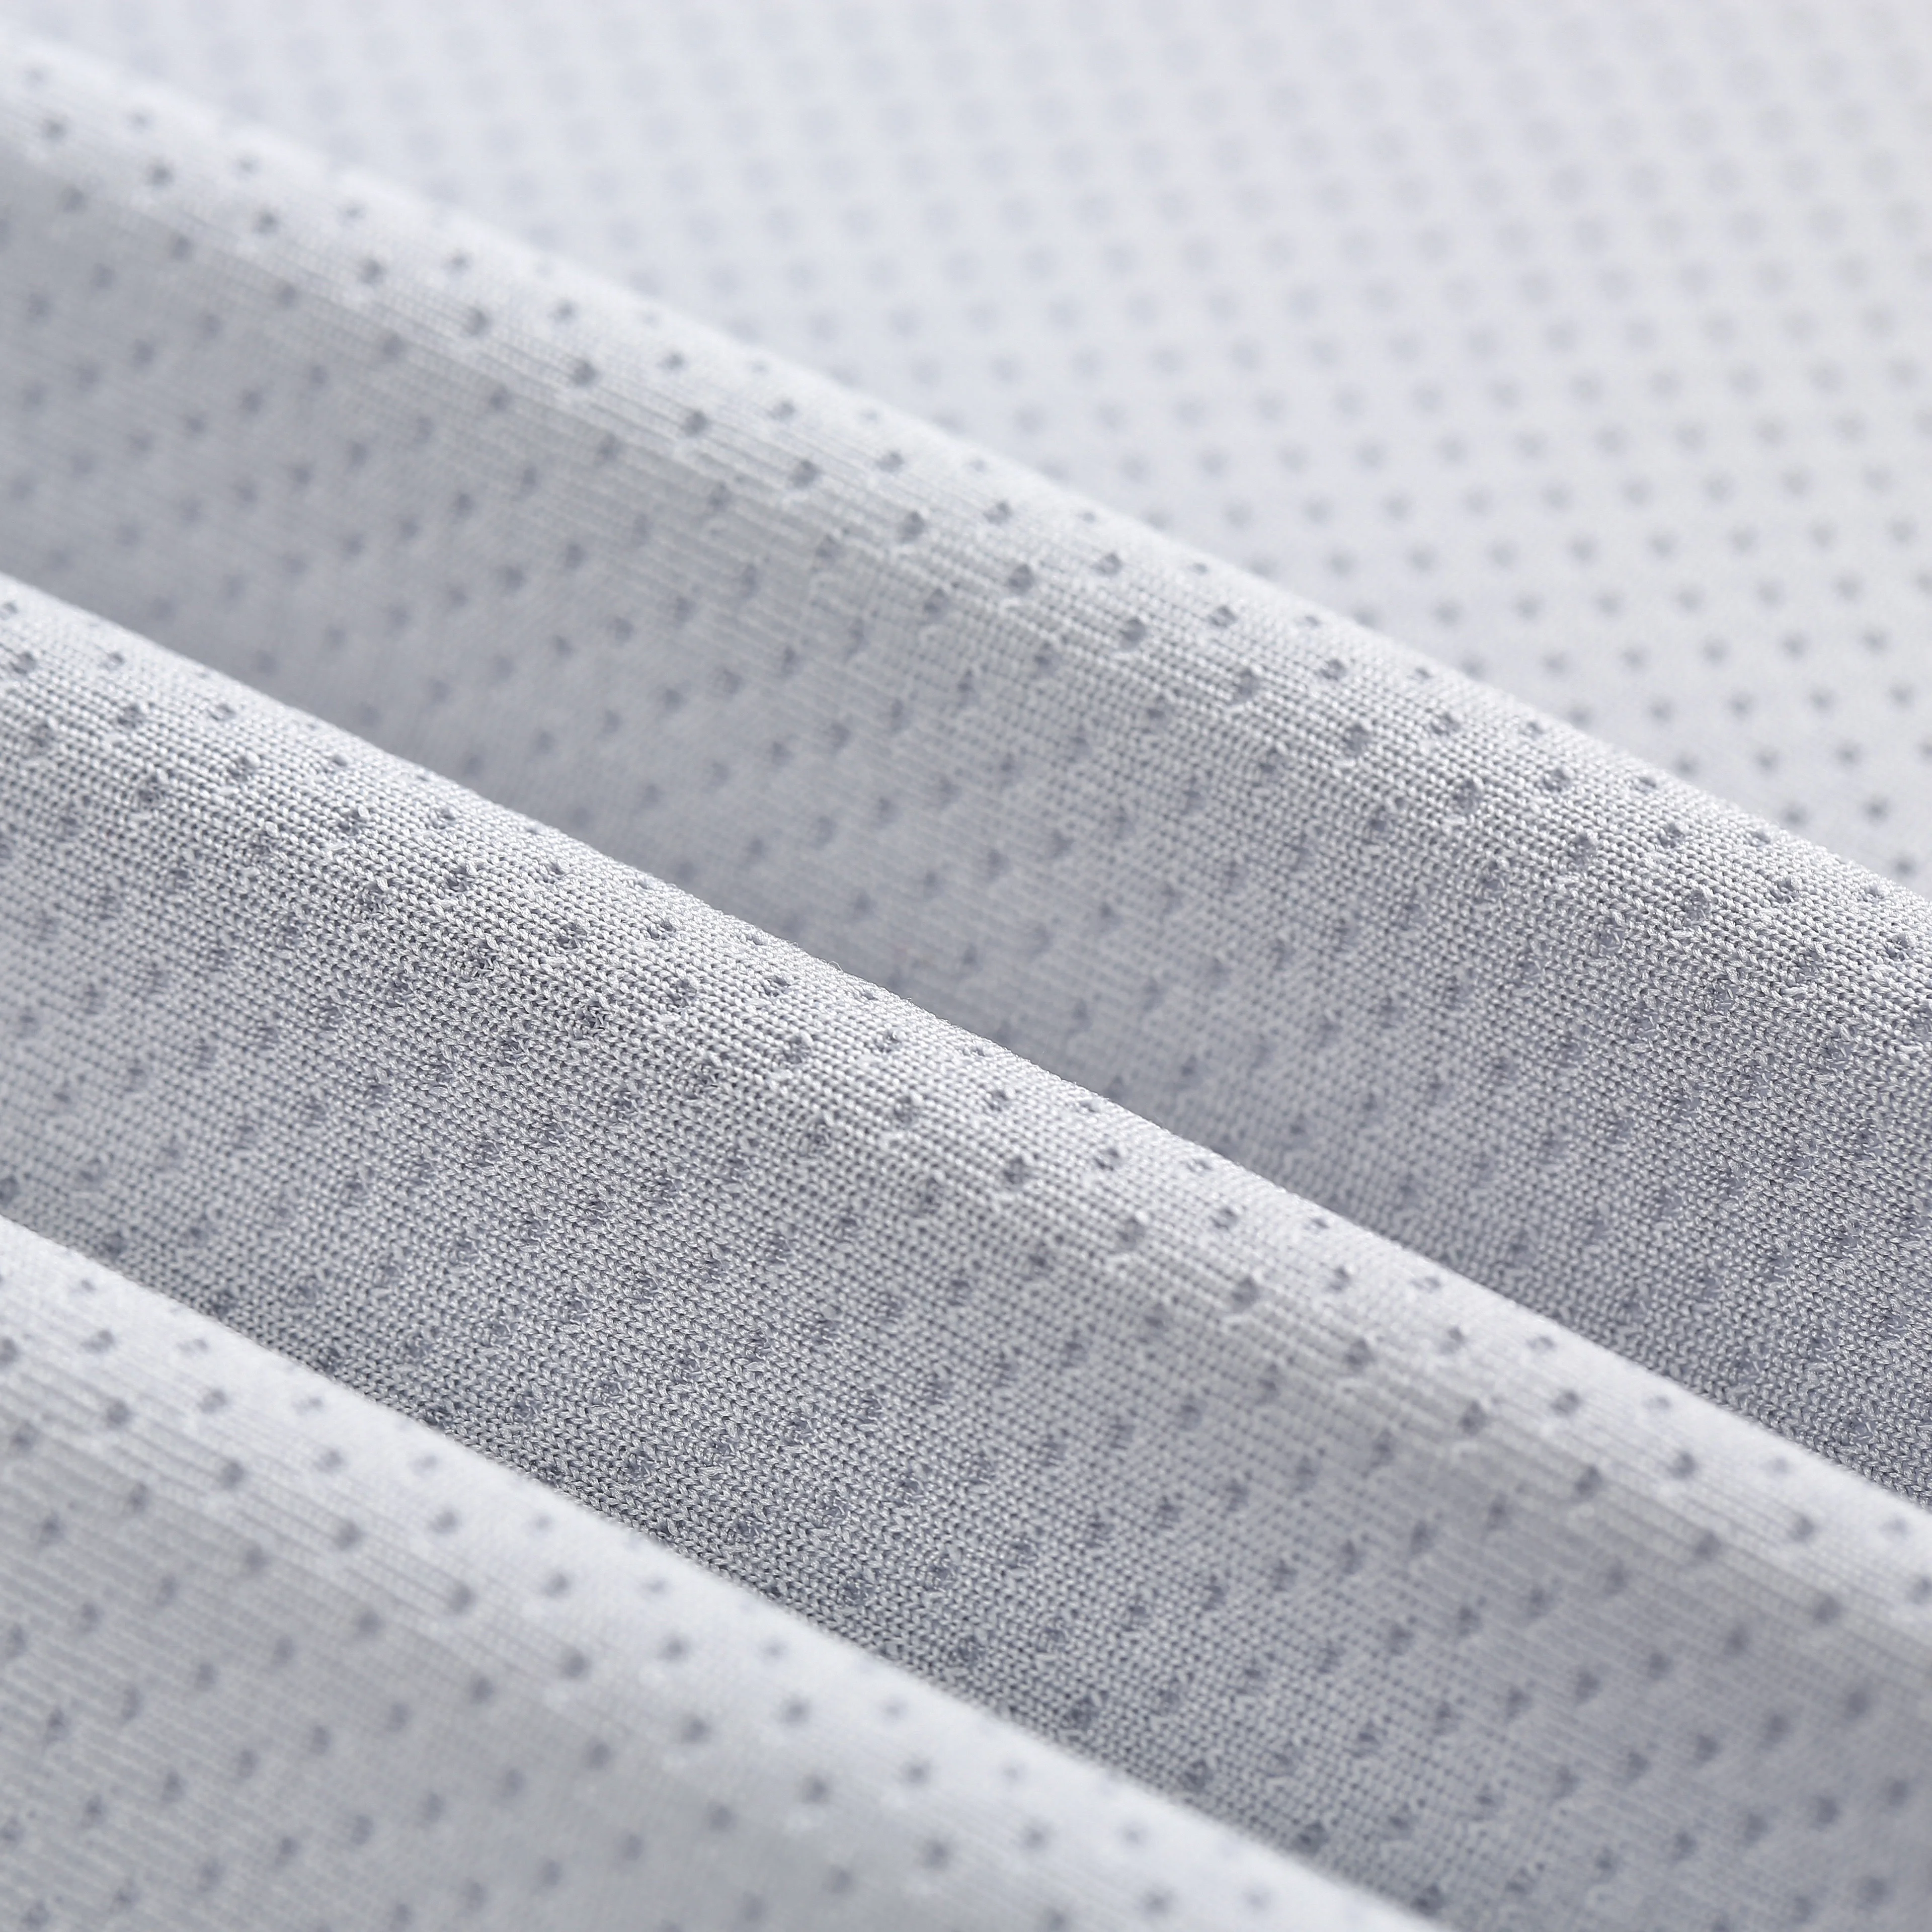 
Polyester spandex elastane 4 way stretch fabric for sportswear leggings 